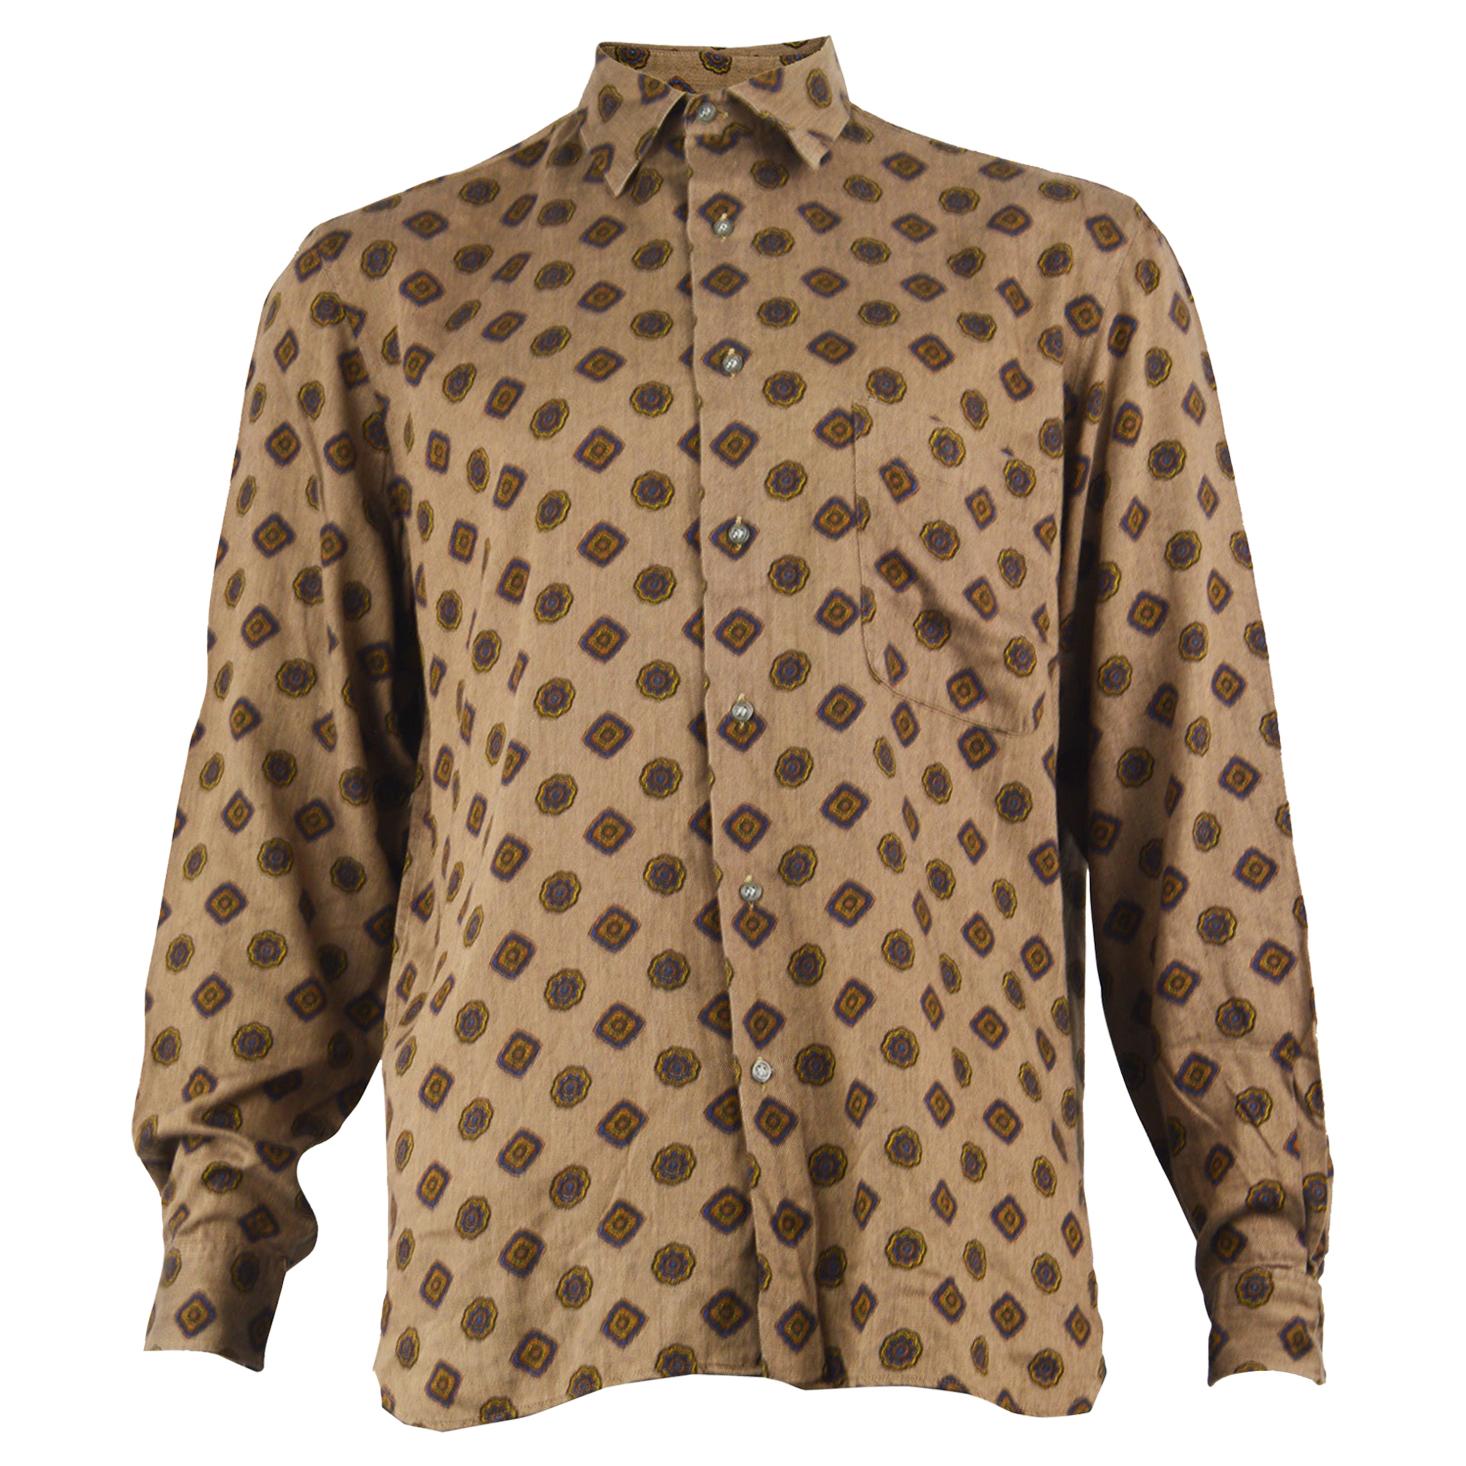 Cacharel Paris 1980s Men's Vintage Brown Cotton & Modal Button Up Shirt